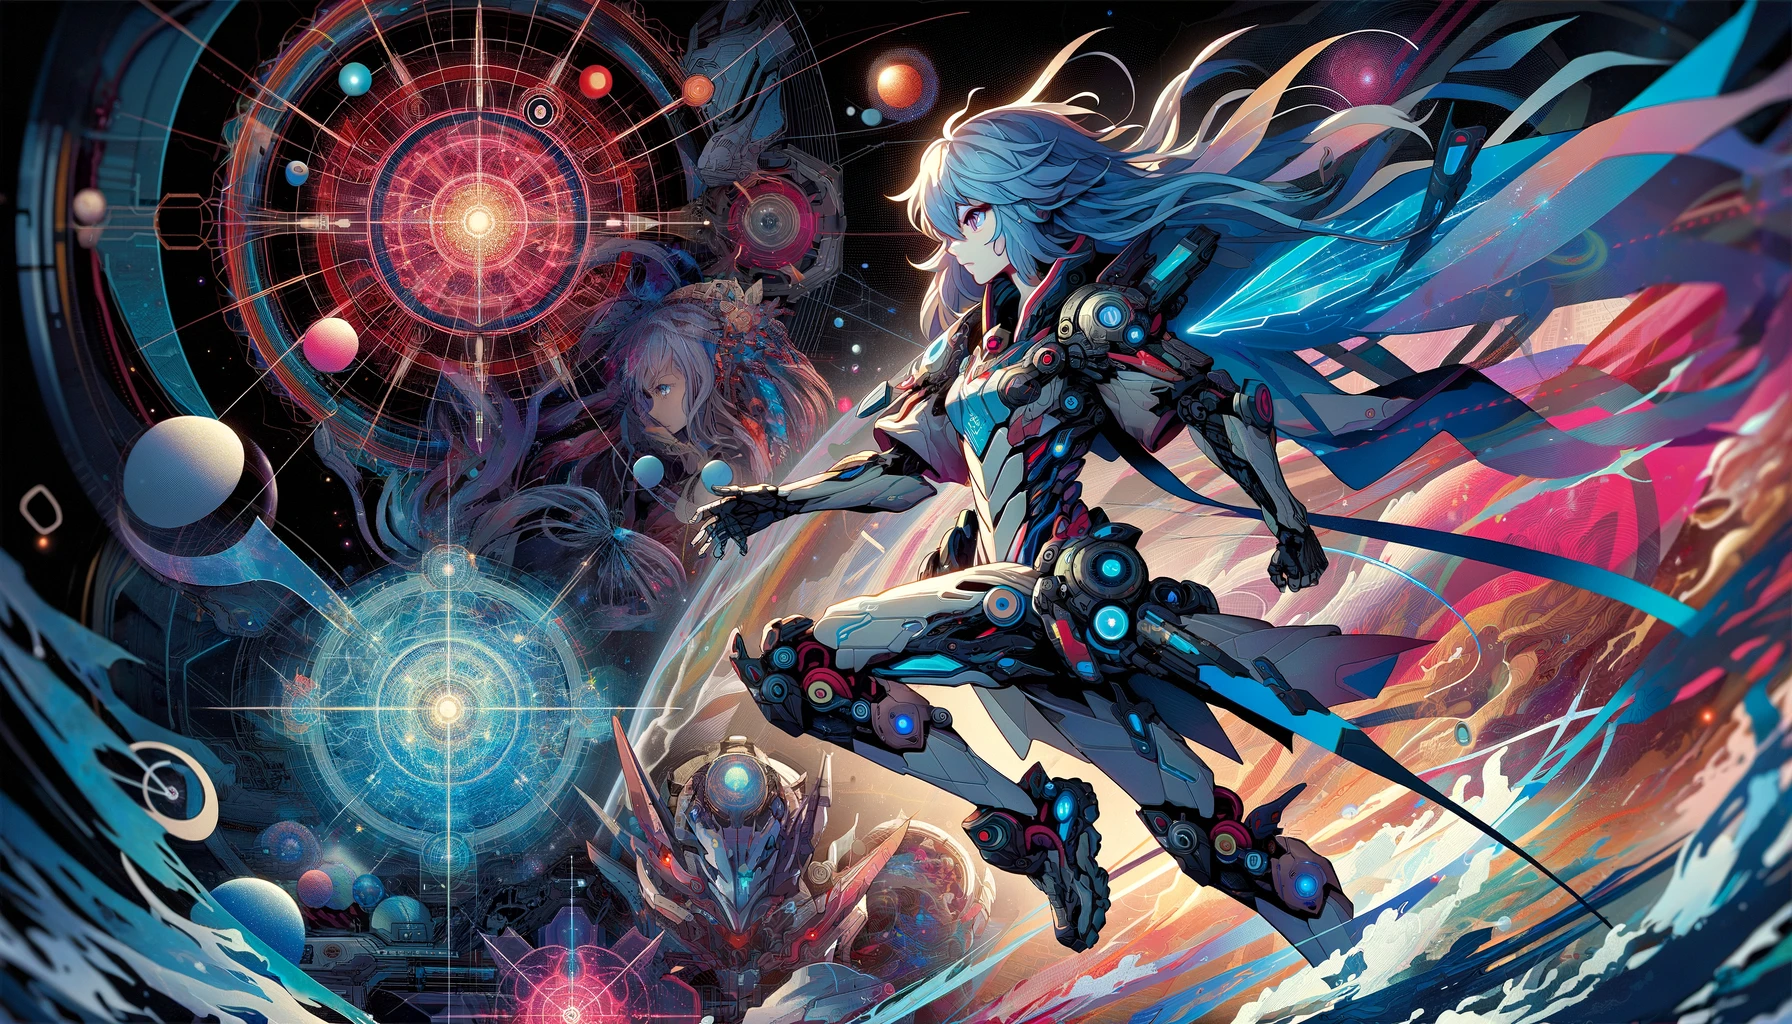 Eine horizontale, sehr detaillierte, farbenfrohe Illustration einer Anime-Figur in dynamischer Pose, vor einem Hintergrund, der an eine Weltraumoper erinnert, mit Elementen, die an ein interstellares High-Tech-Setting erinnern